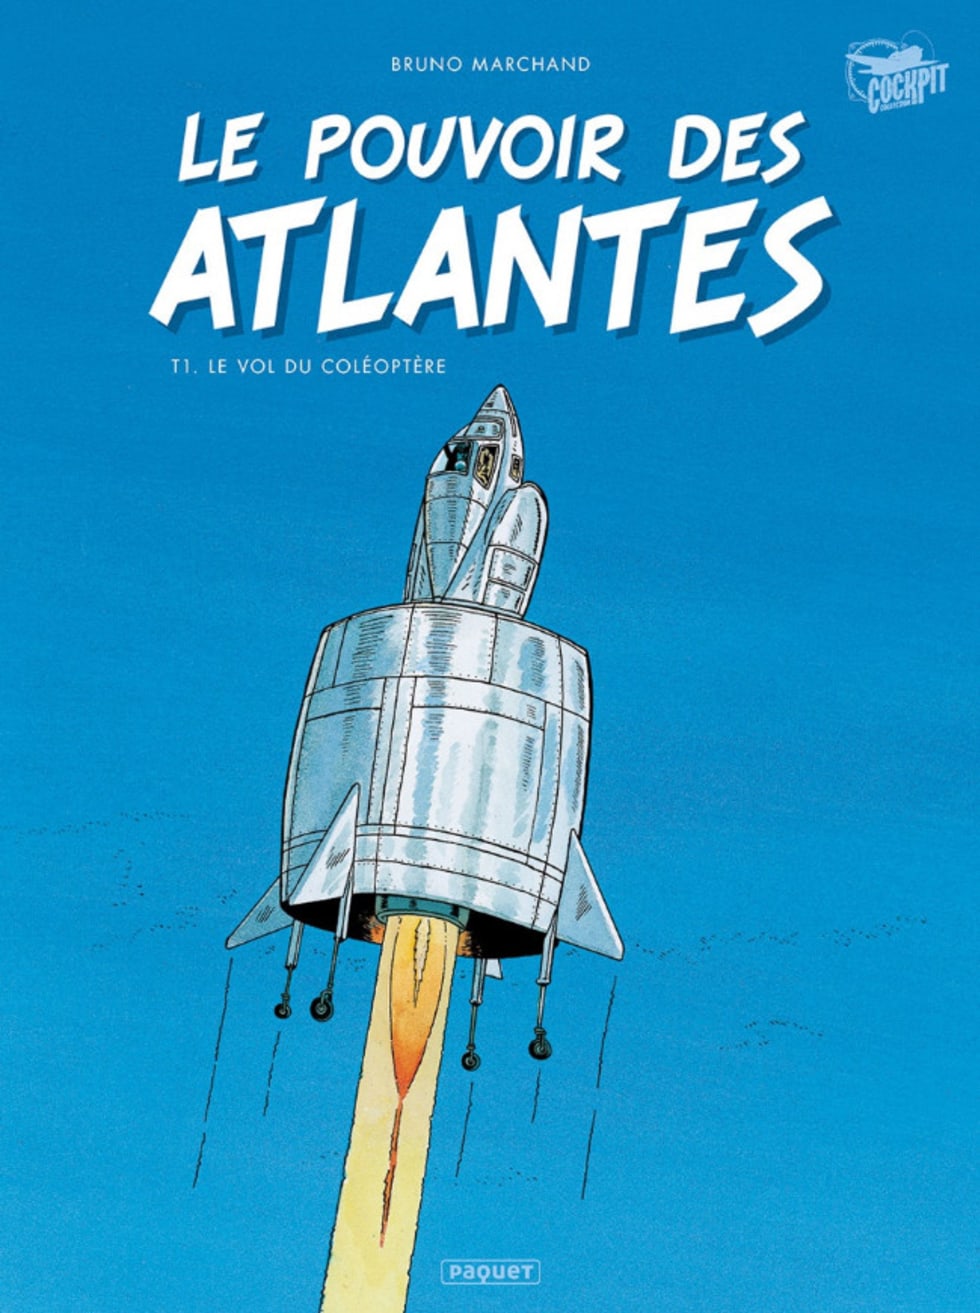 Couverture de la BD : « Le pouvoir des Atlantes – tome 1, Le Vol du coléoptère »